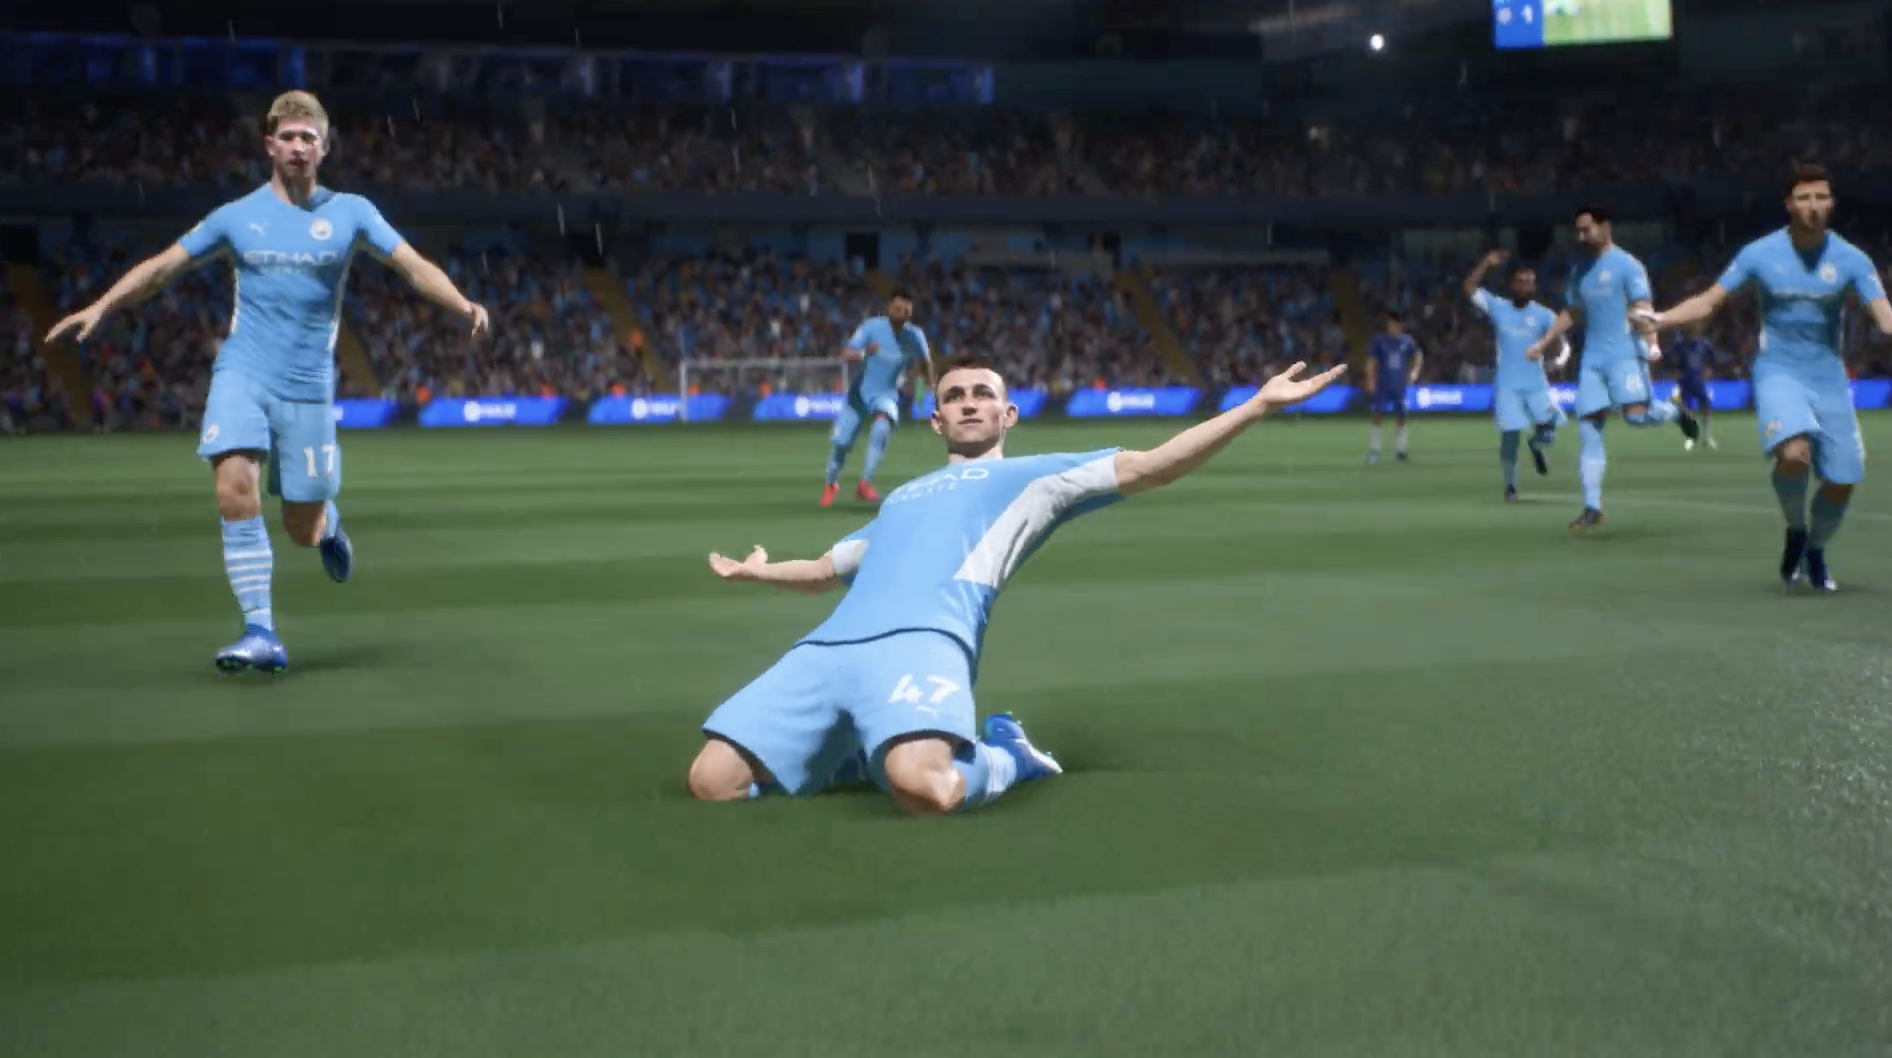 Xbox Game Pass: quando o FIFA 22 aparecerá na assinatura do EA Play? -  Windows Club